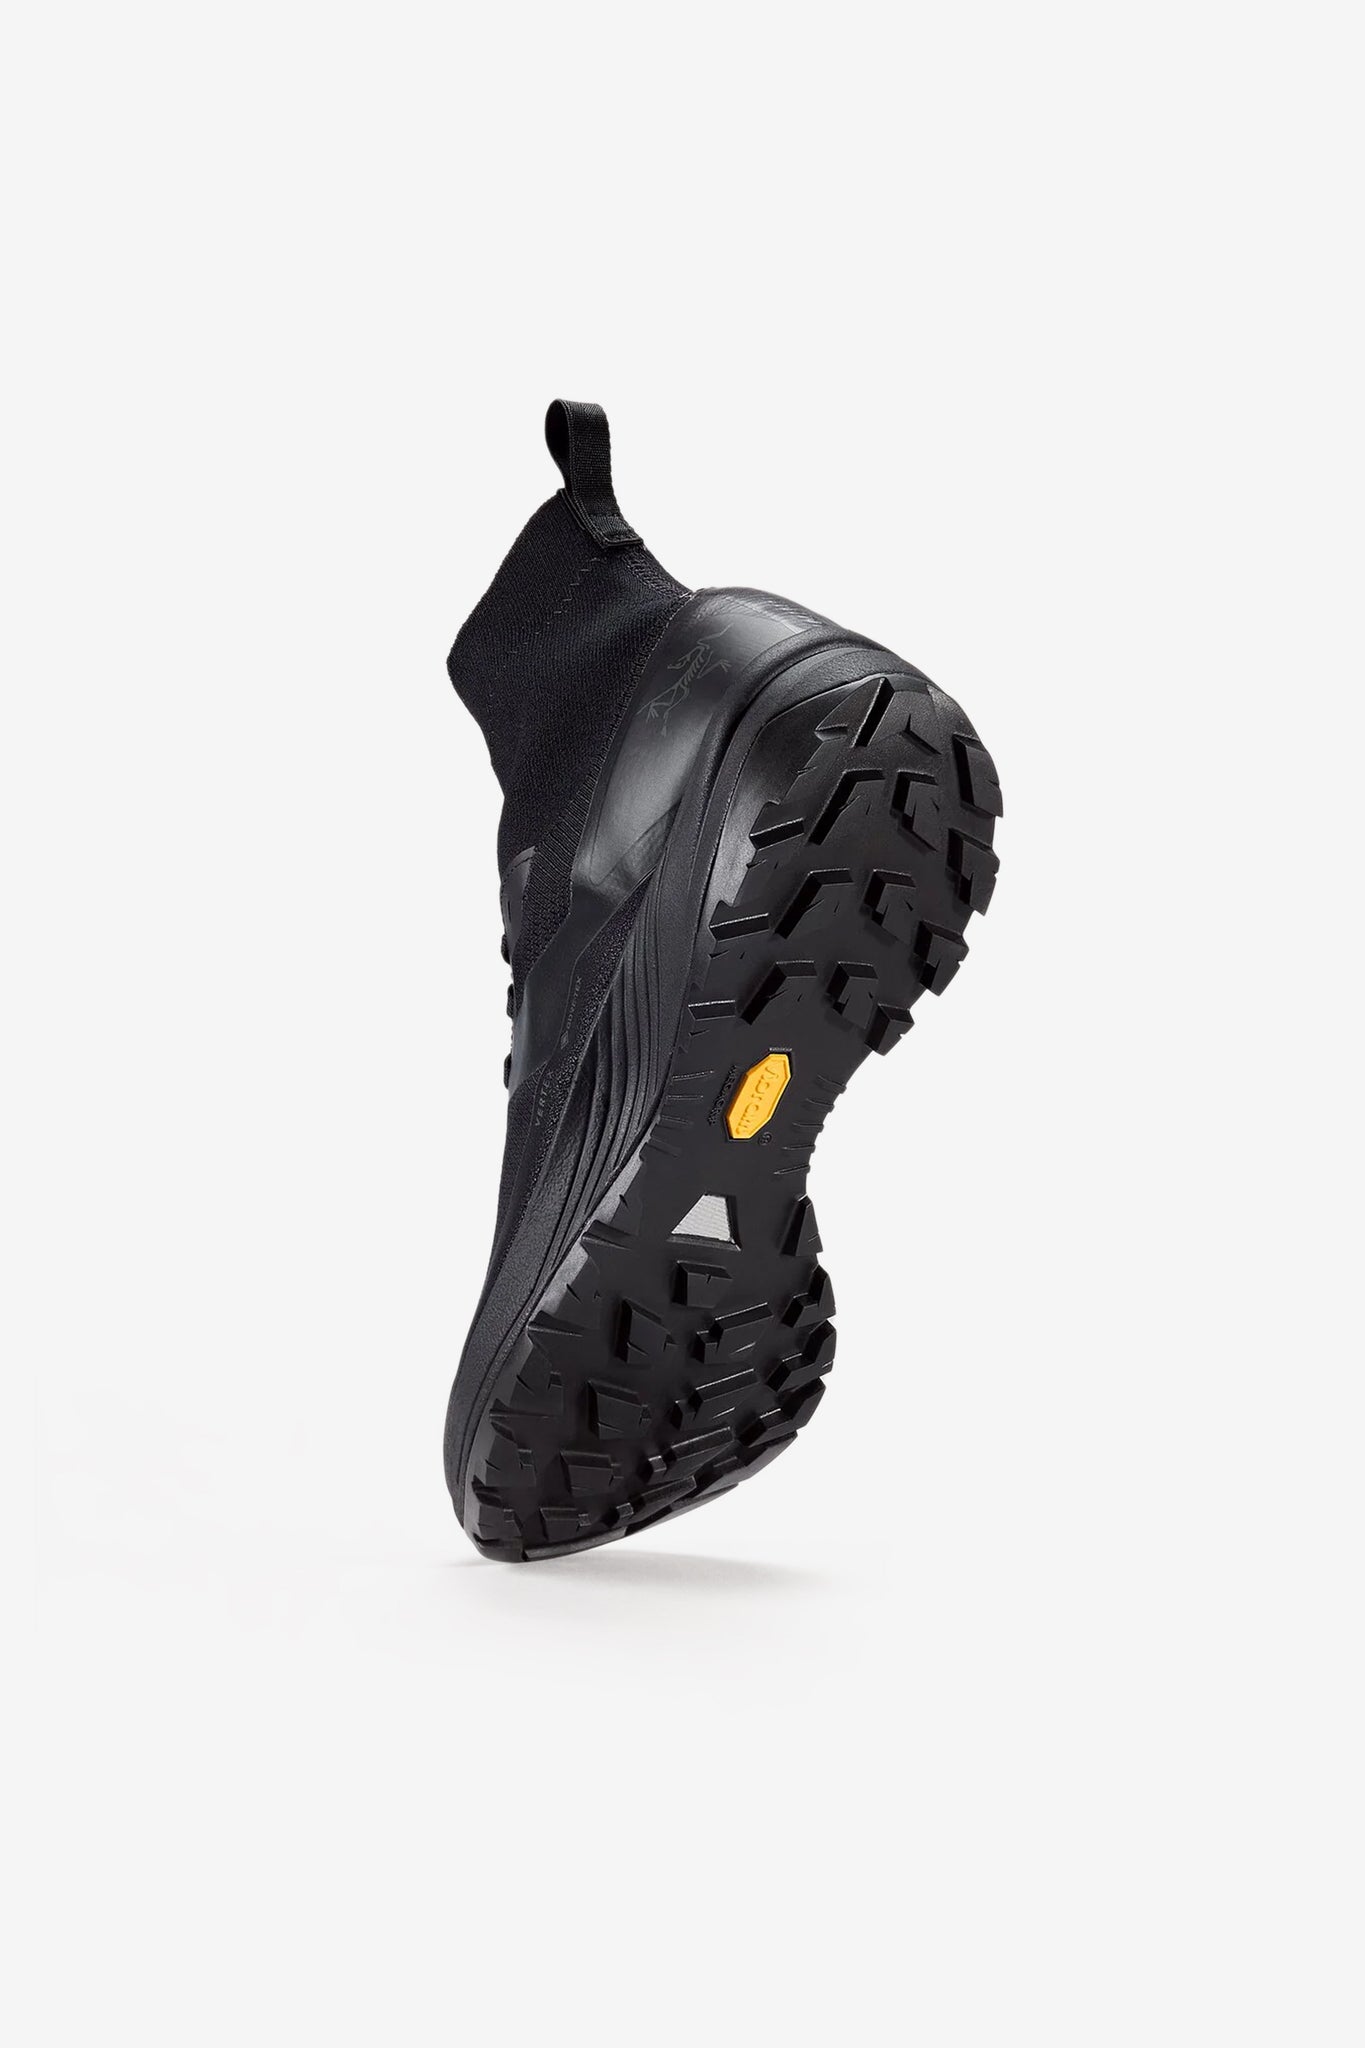 Arc'teryx Unisex Vertex GTX Shoe in Black/Black